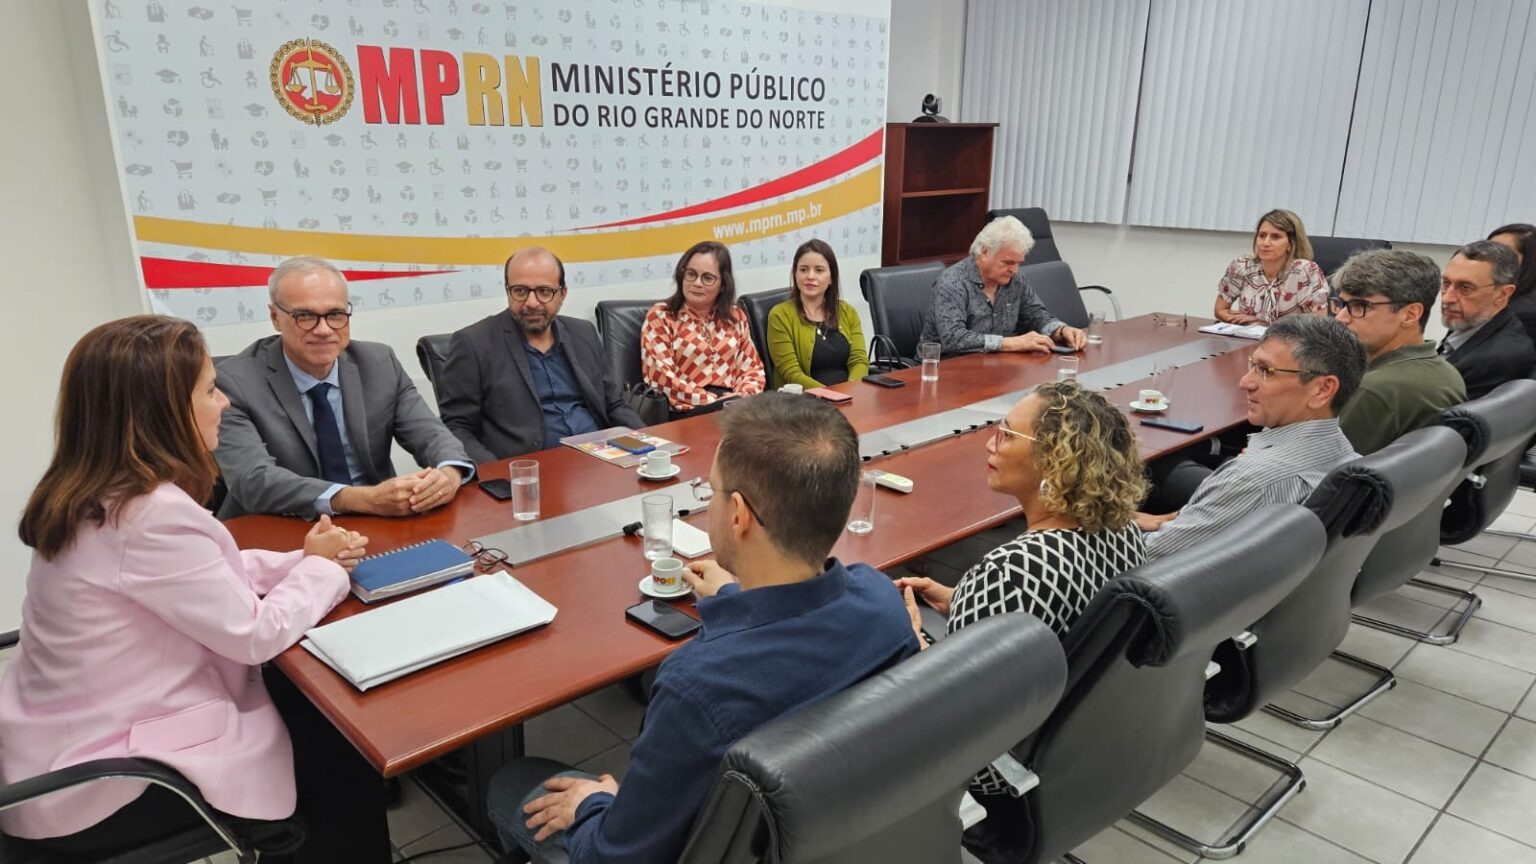 IPP/UFRN E MPRN Colaboram Para Impulsionar O Monitoramento De Políticas Públicas